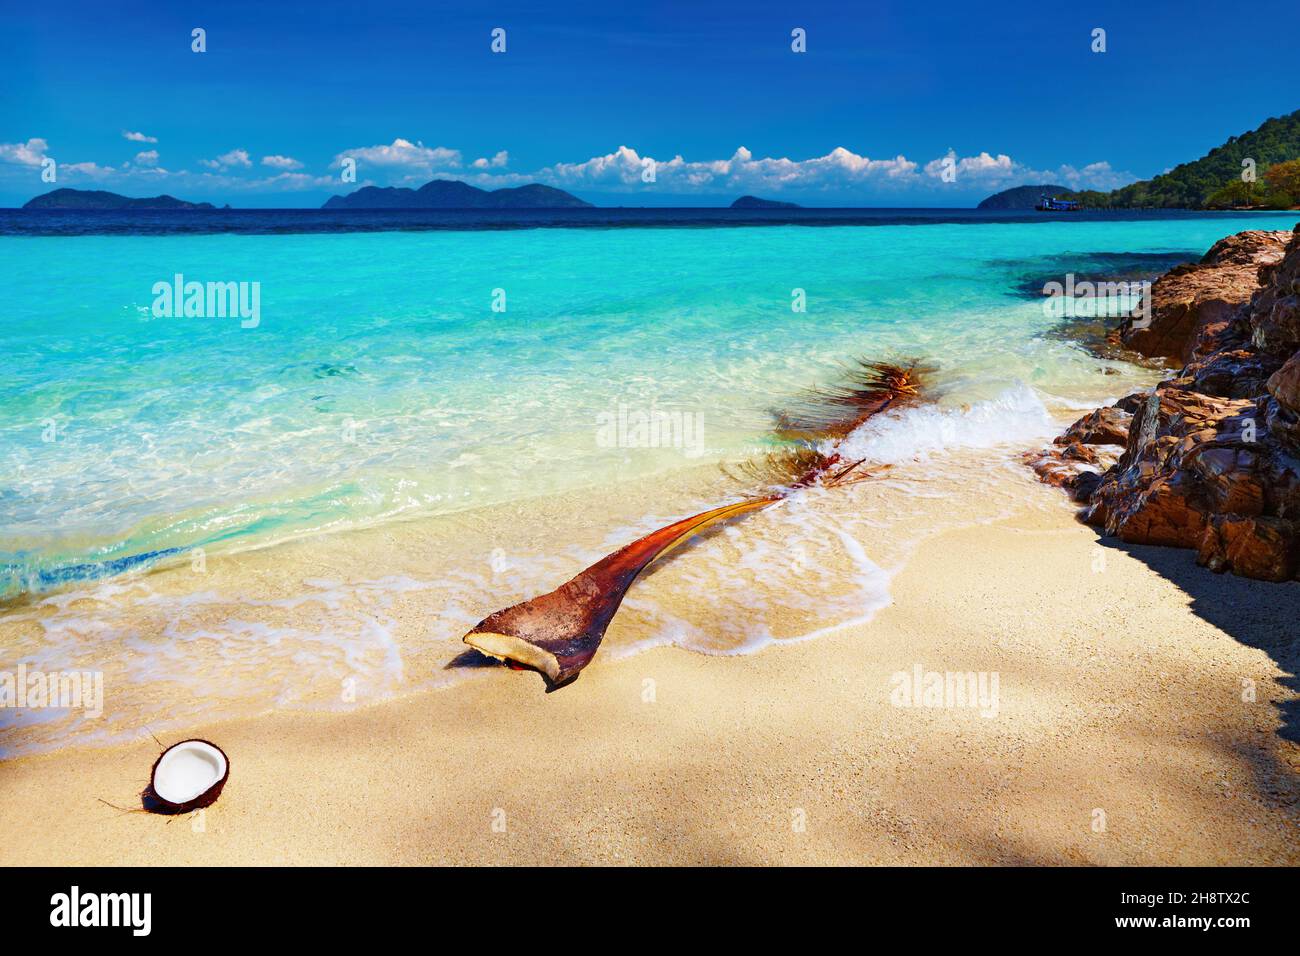 Tropical beach, Wai island, Thailand Stock Photo